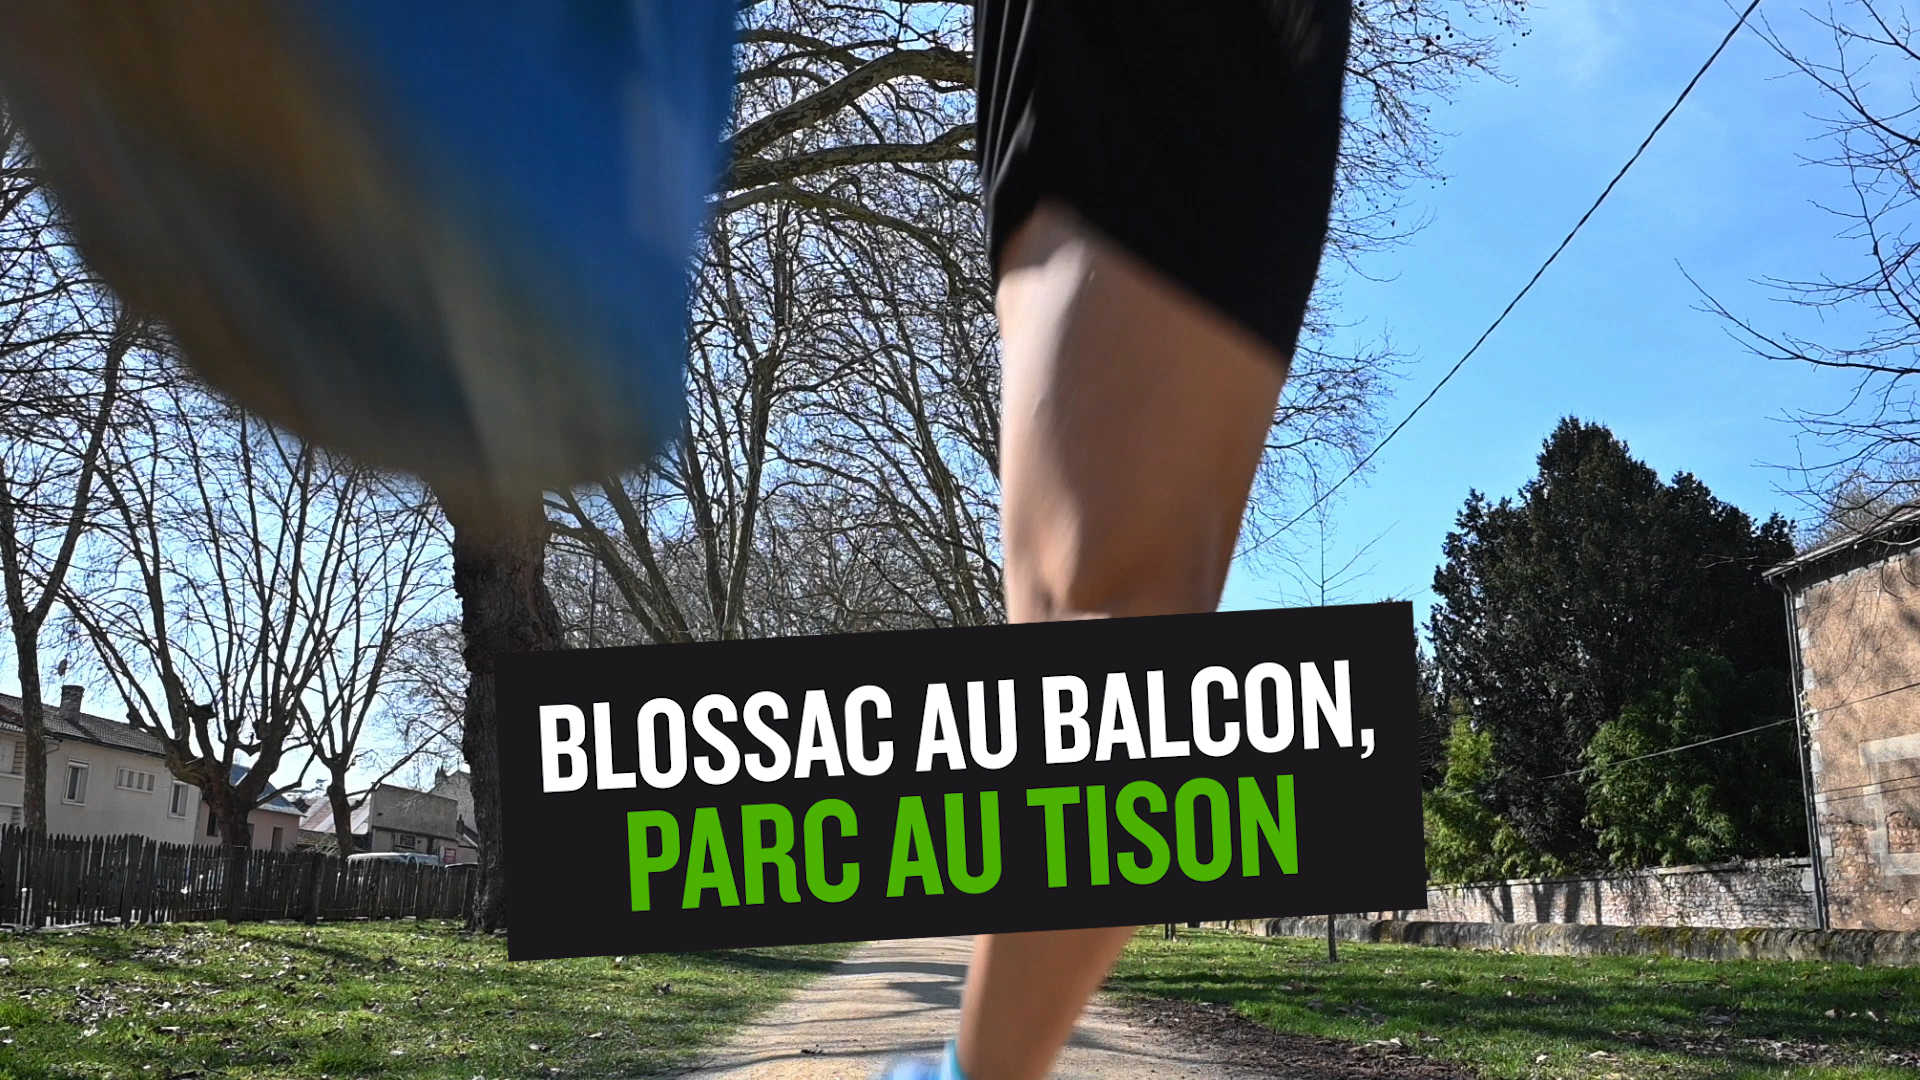 Blossac au Balcon, Parc au Tison